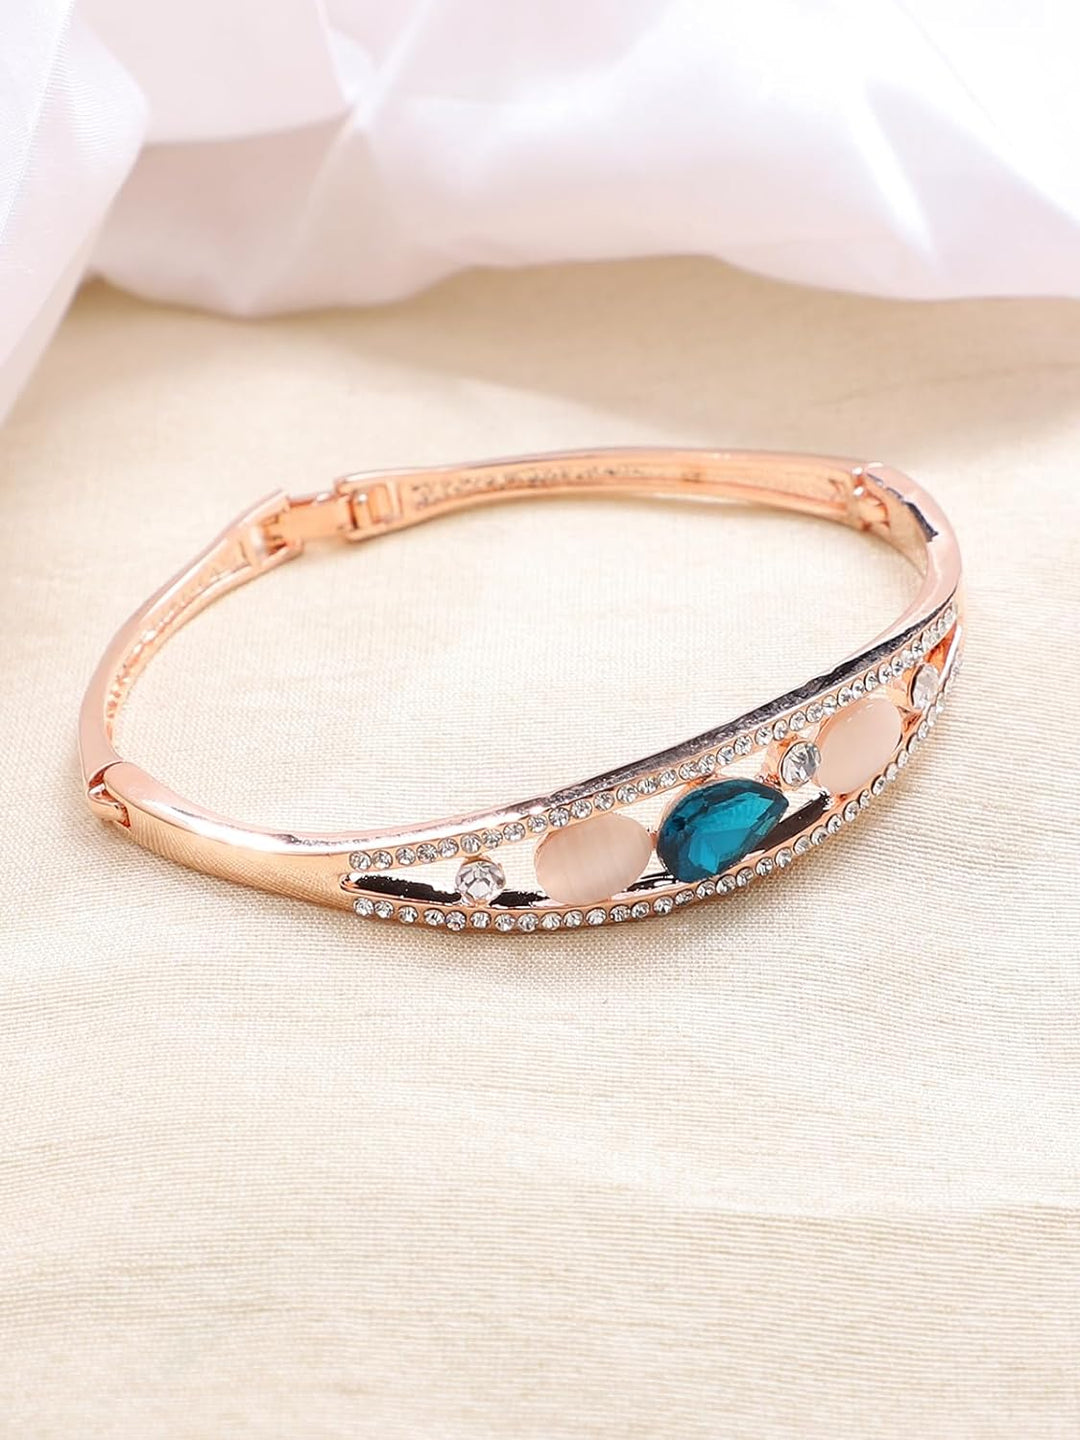 Crystal Studded Bracelet for Women and Girls | Rose Gold Plated Blue Crystal Studded Bracelet for Women/Girls